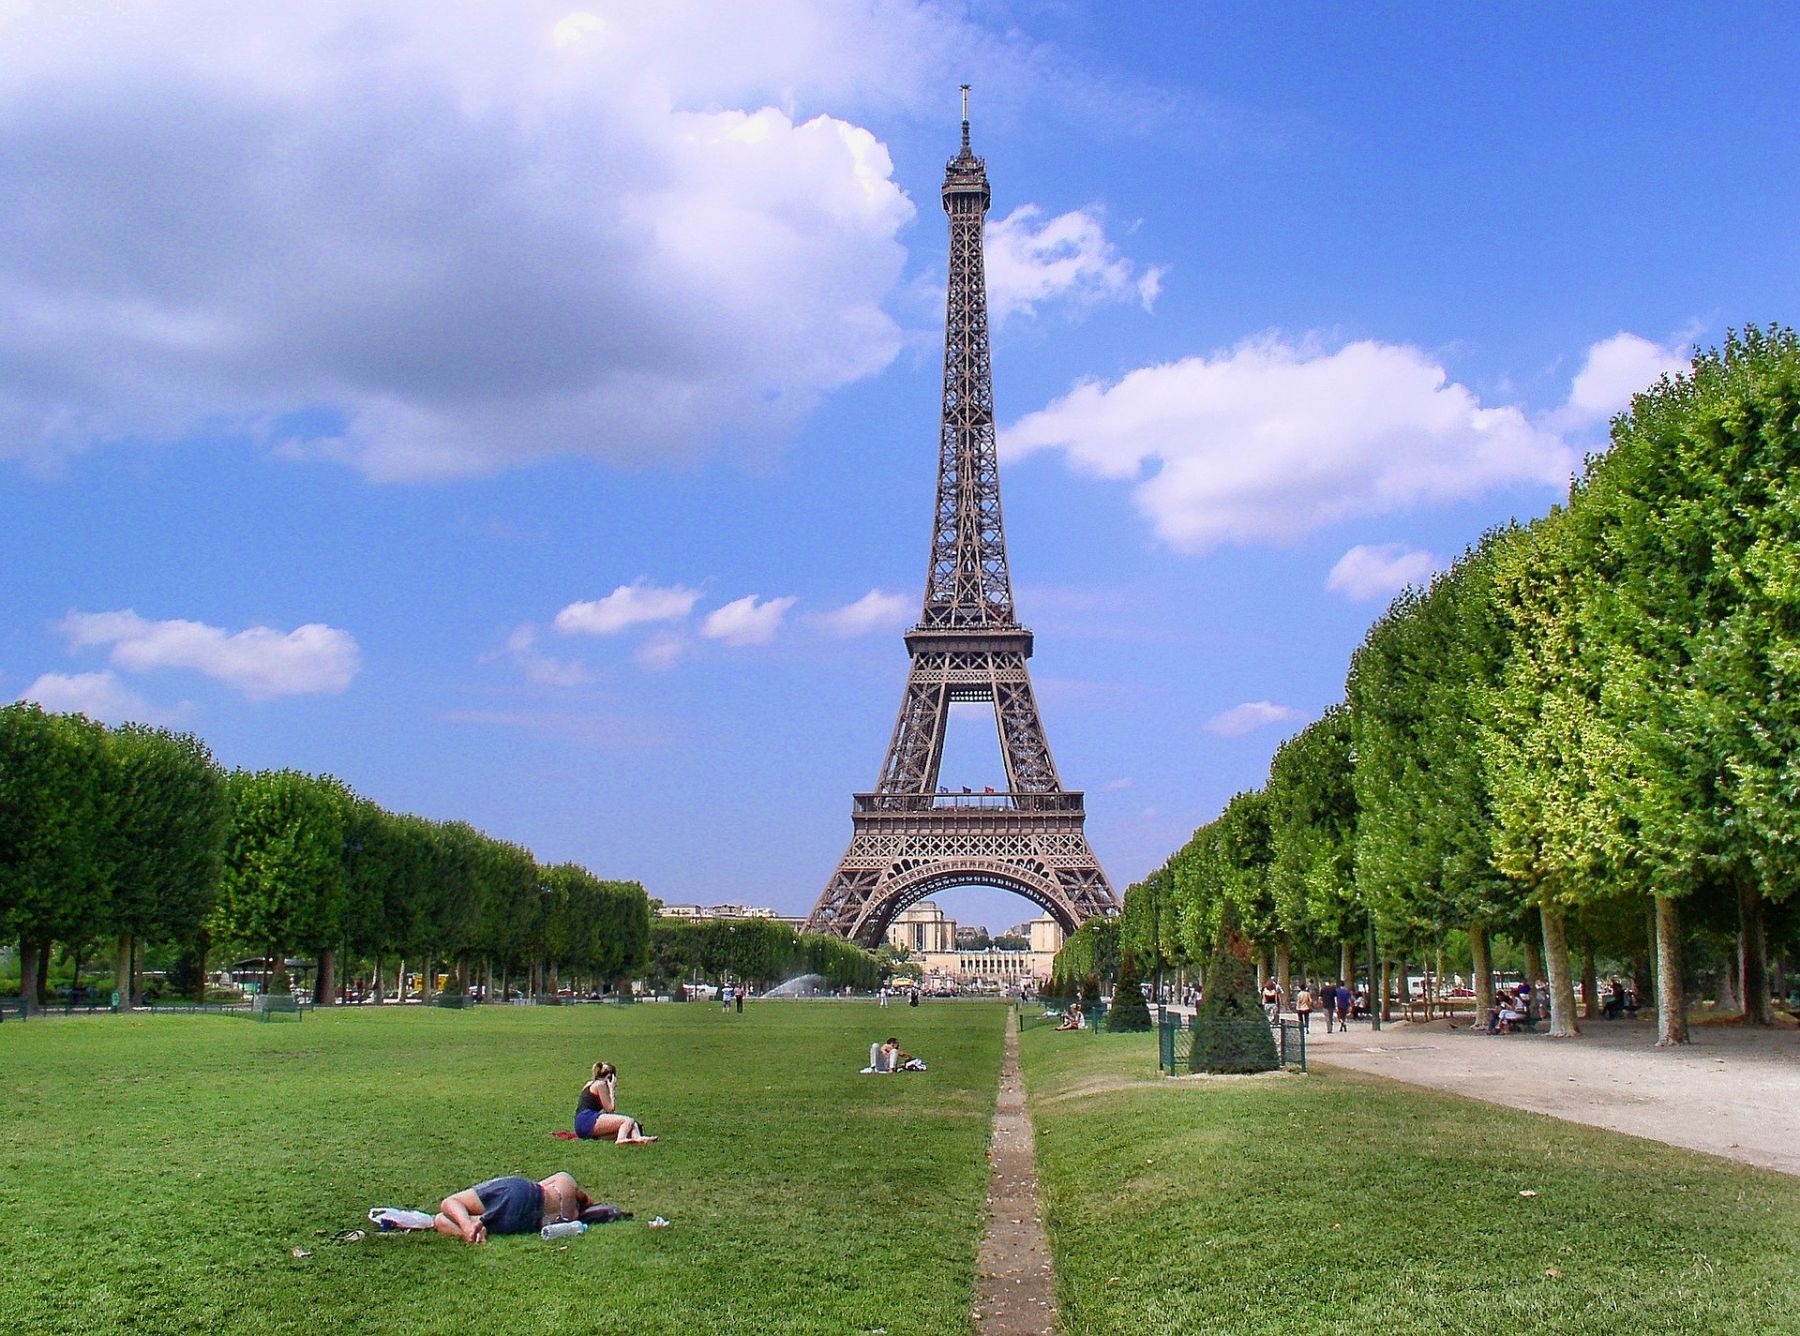 Auto een experiment doen boeren De Eiffeltoren in Parijs: mooiste foto en kaartjes kopen